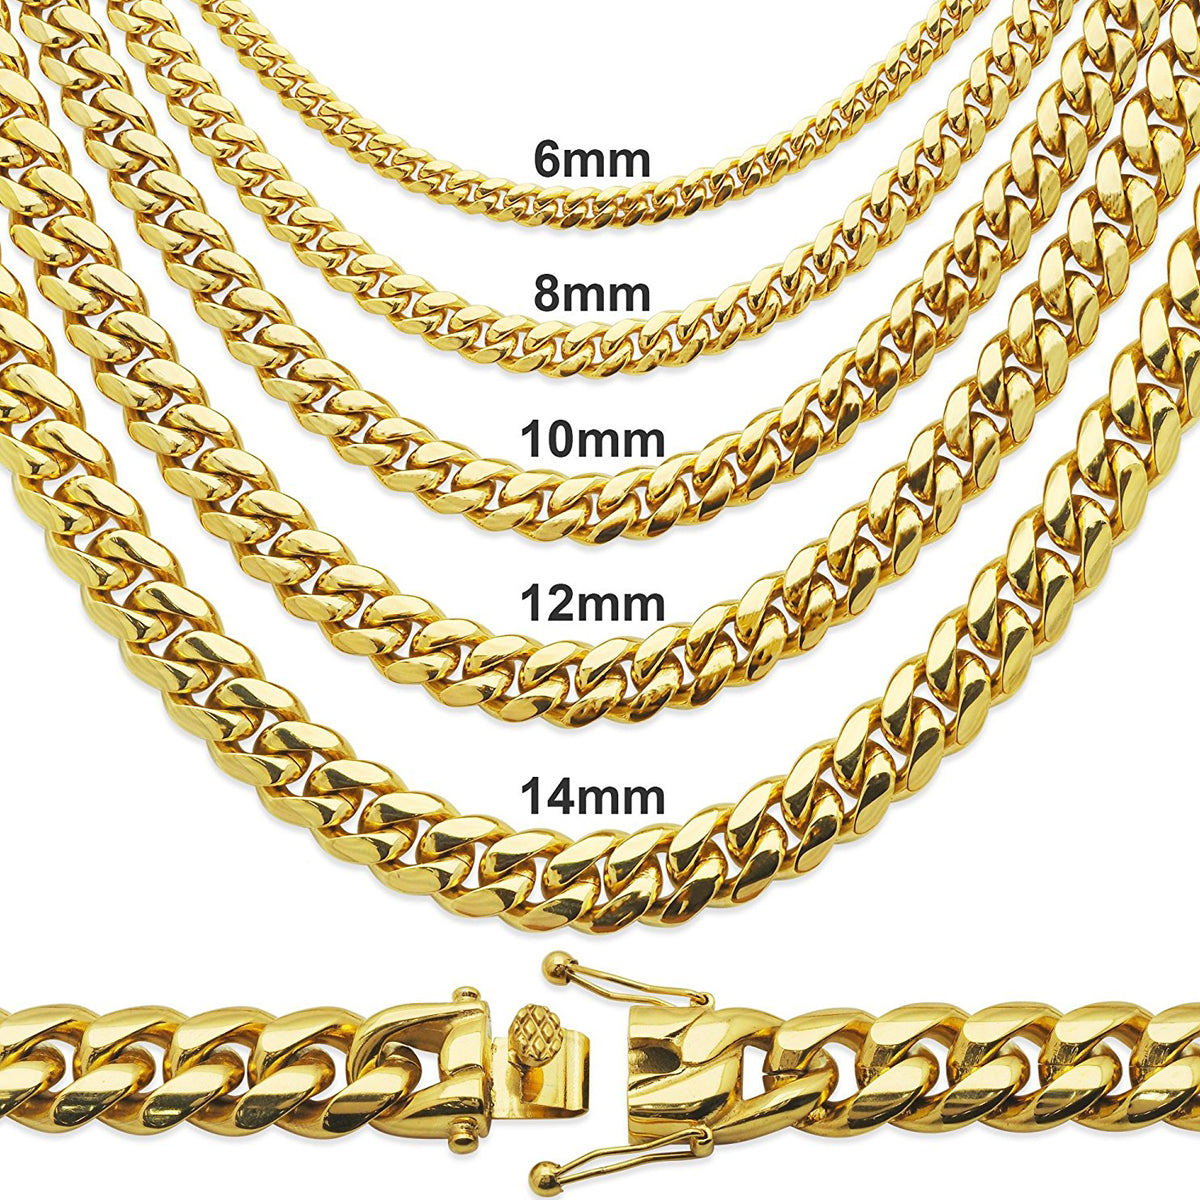 14k Gold Finish Steel 10mm 20" Plain Miami Cuban Chain